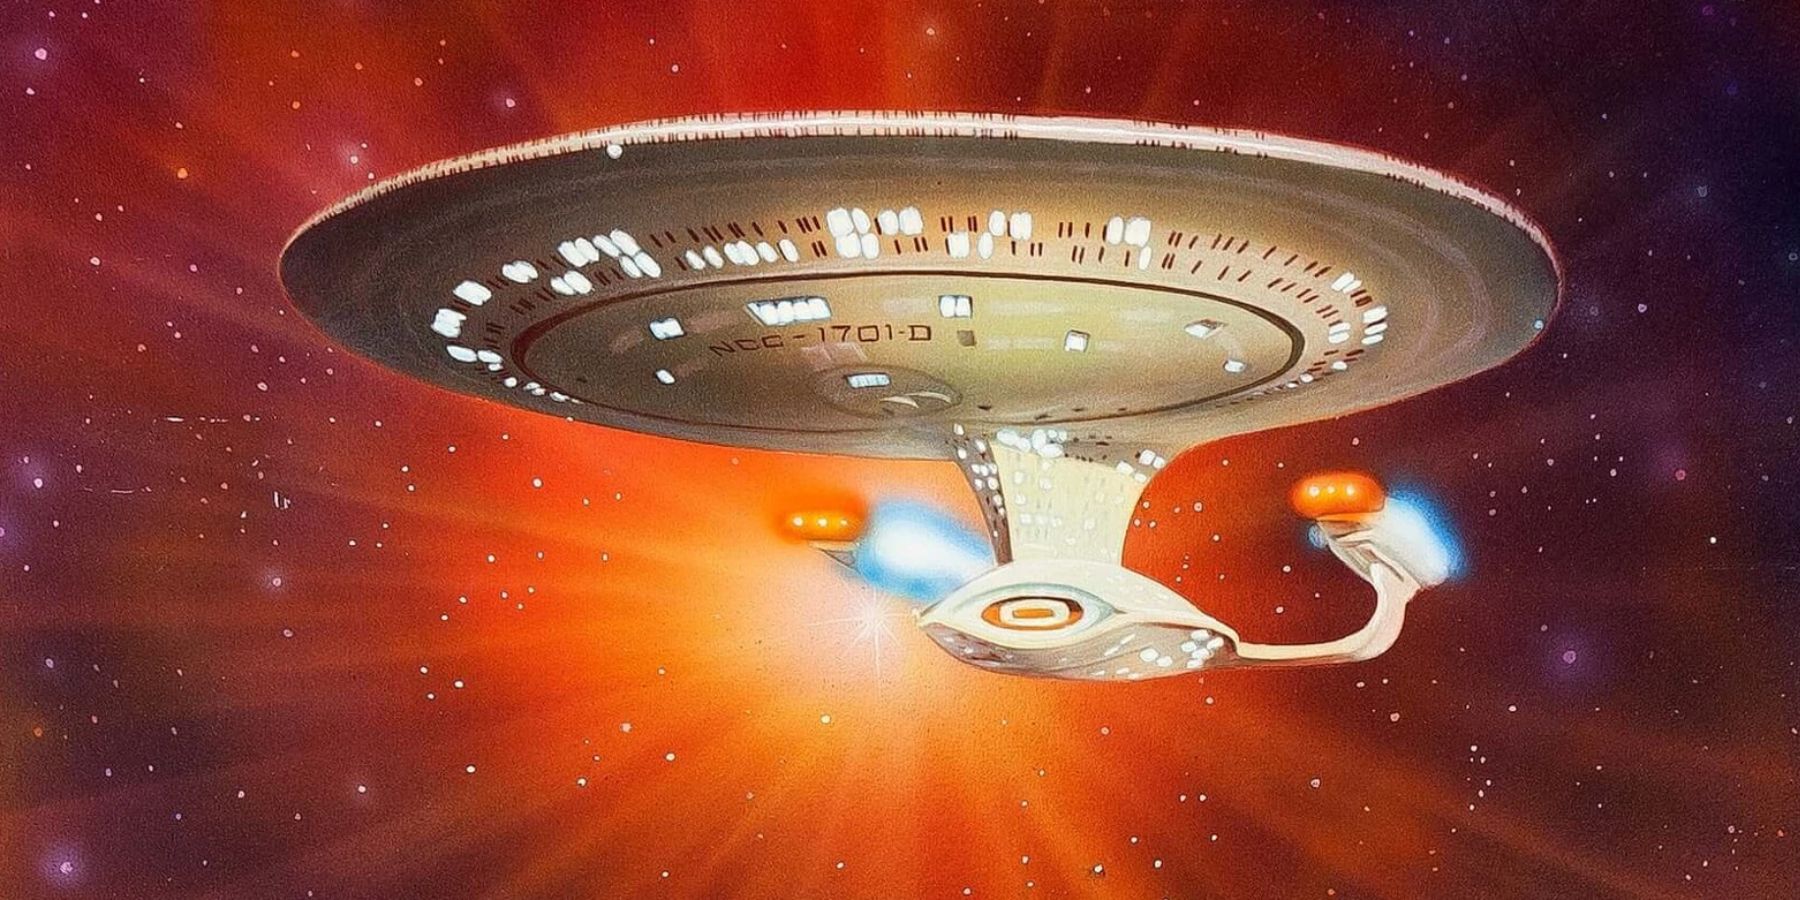 Star Trek enterprise D